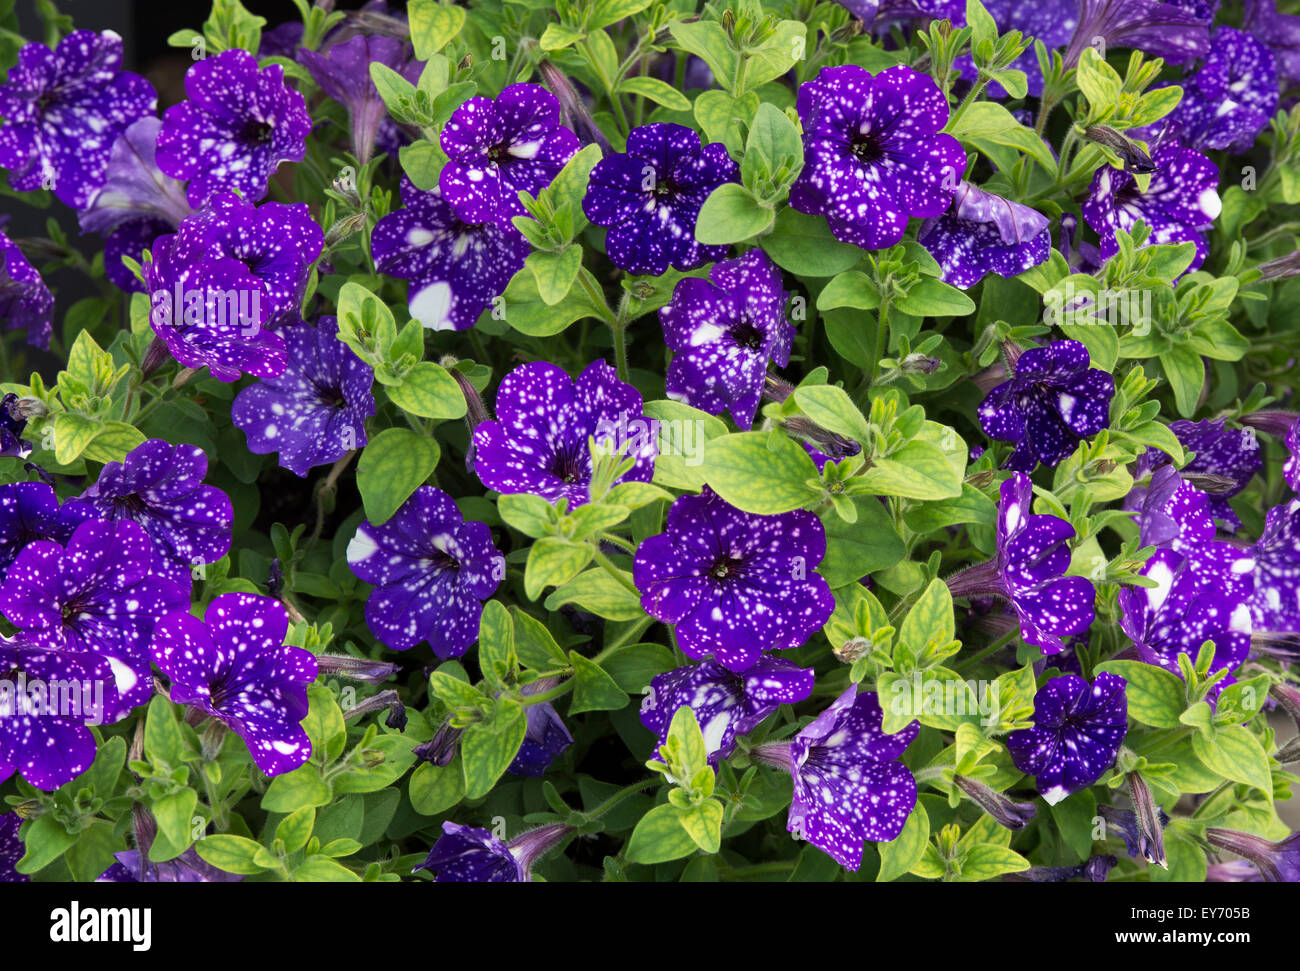 Petunia 'Night sky' flowers Stock Photo